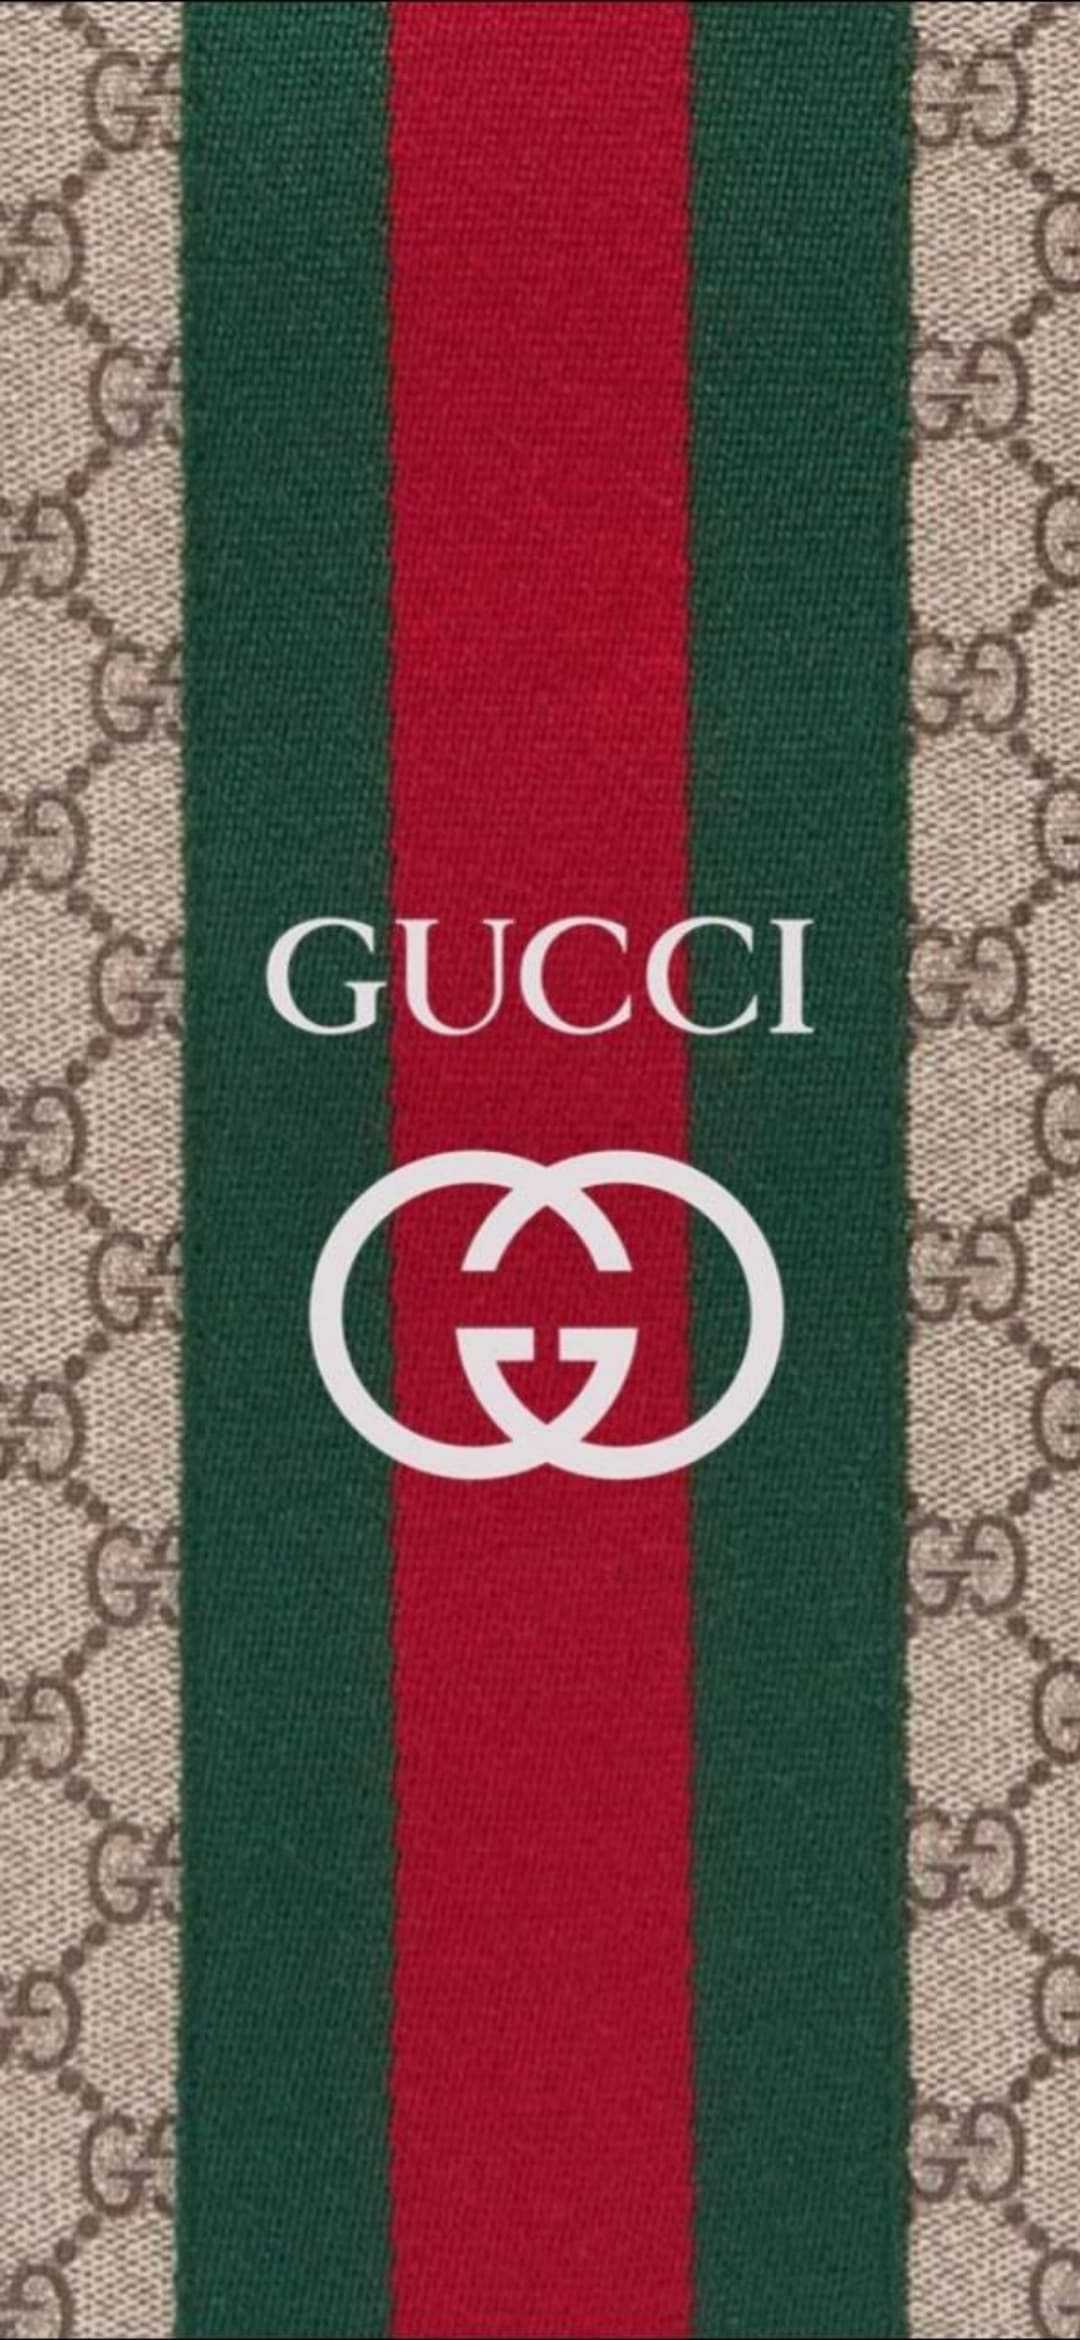 Hình ảnh logo Gucci